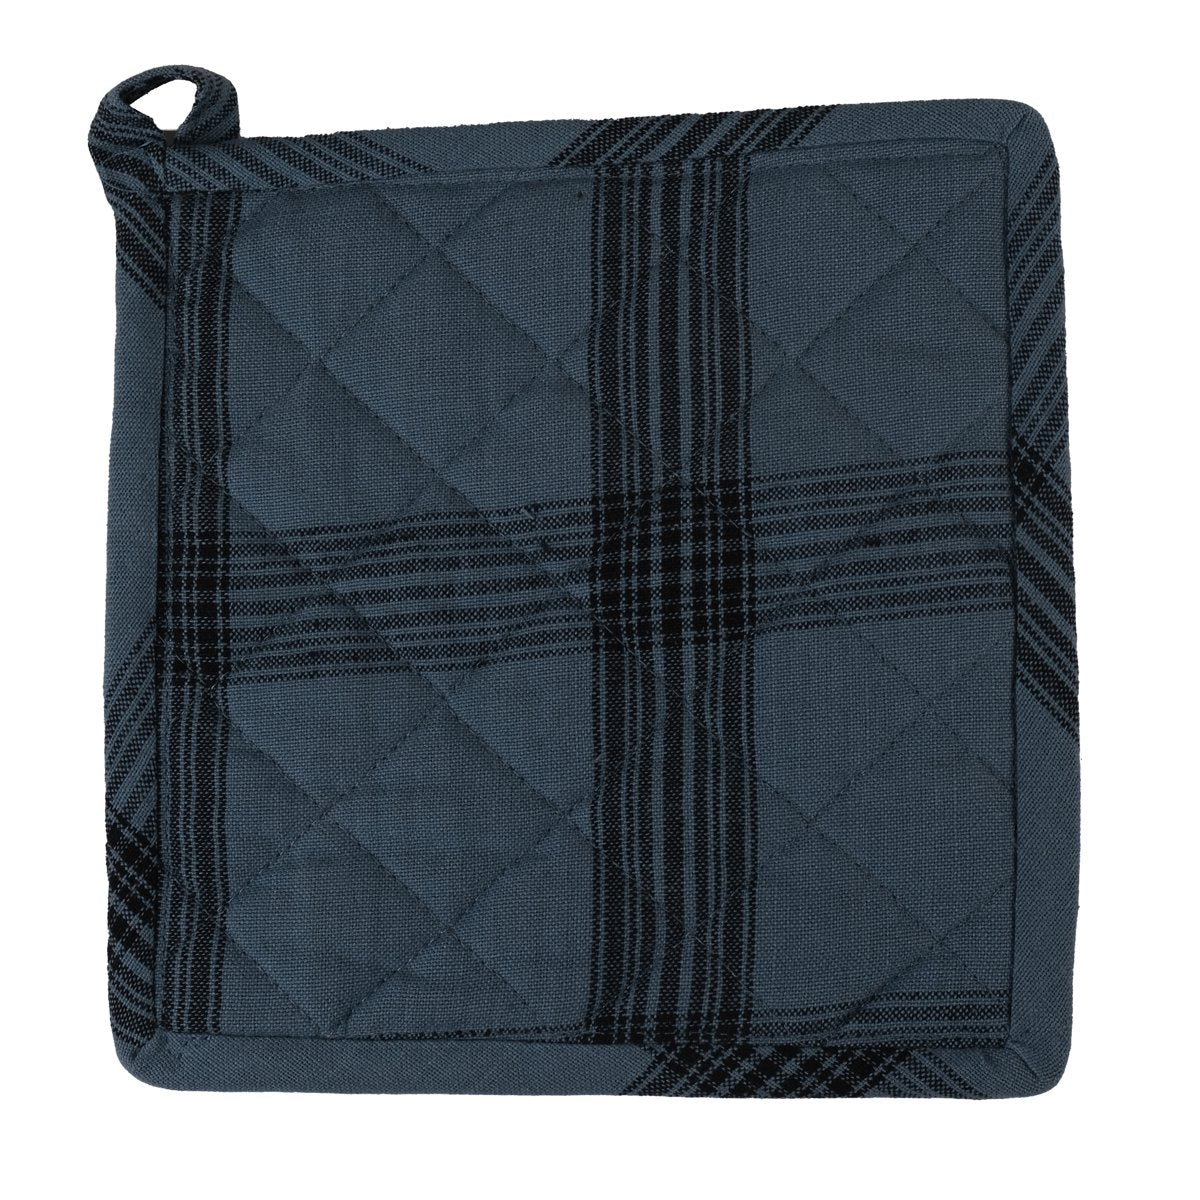 Linen & More - Pannenlap 'Black Check' (20cm x 20cm, Mirage Blue)